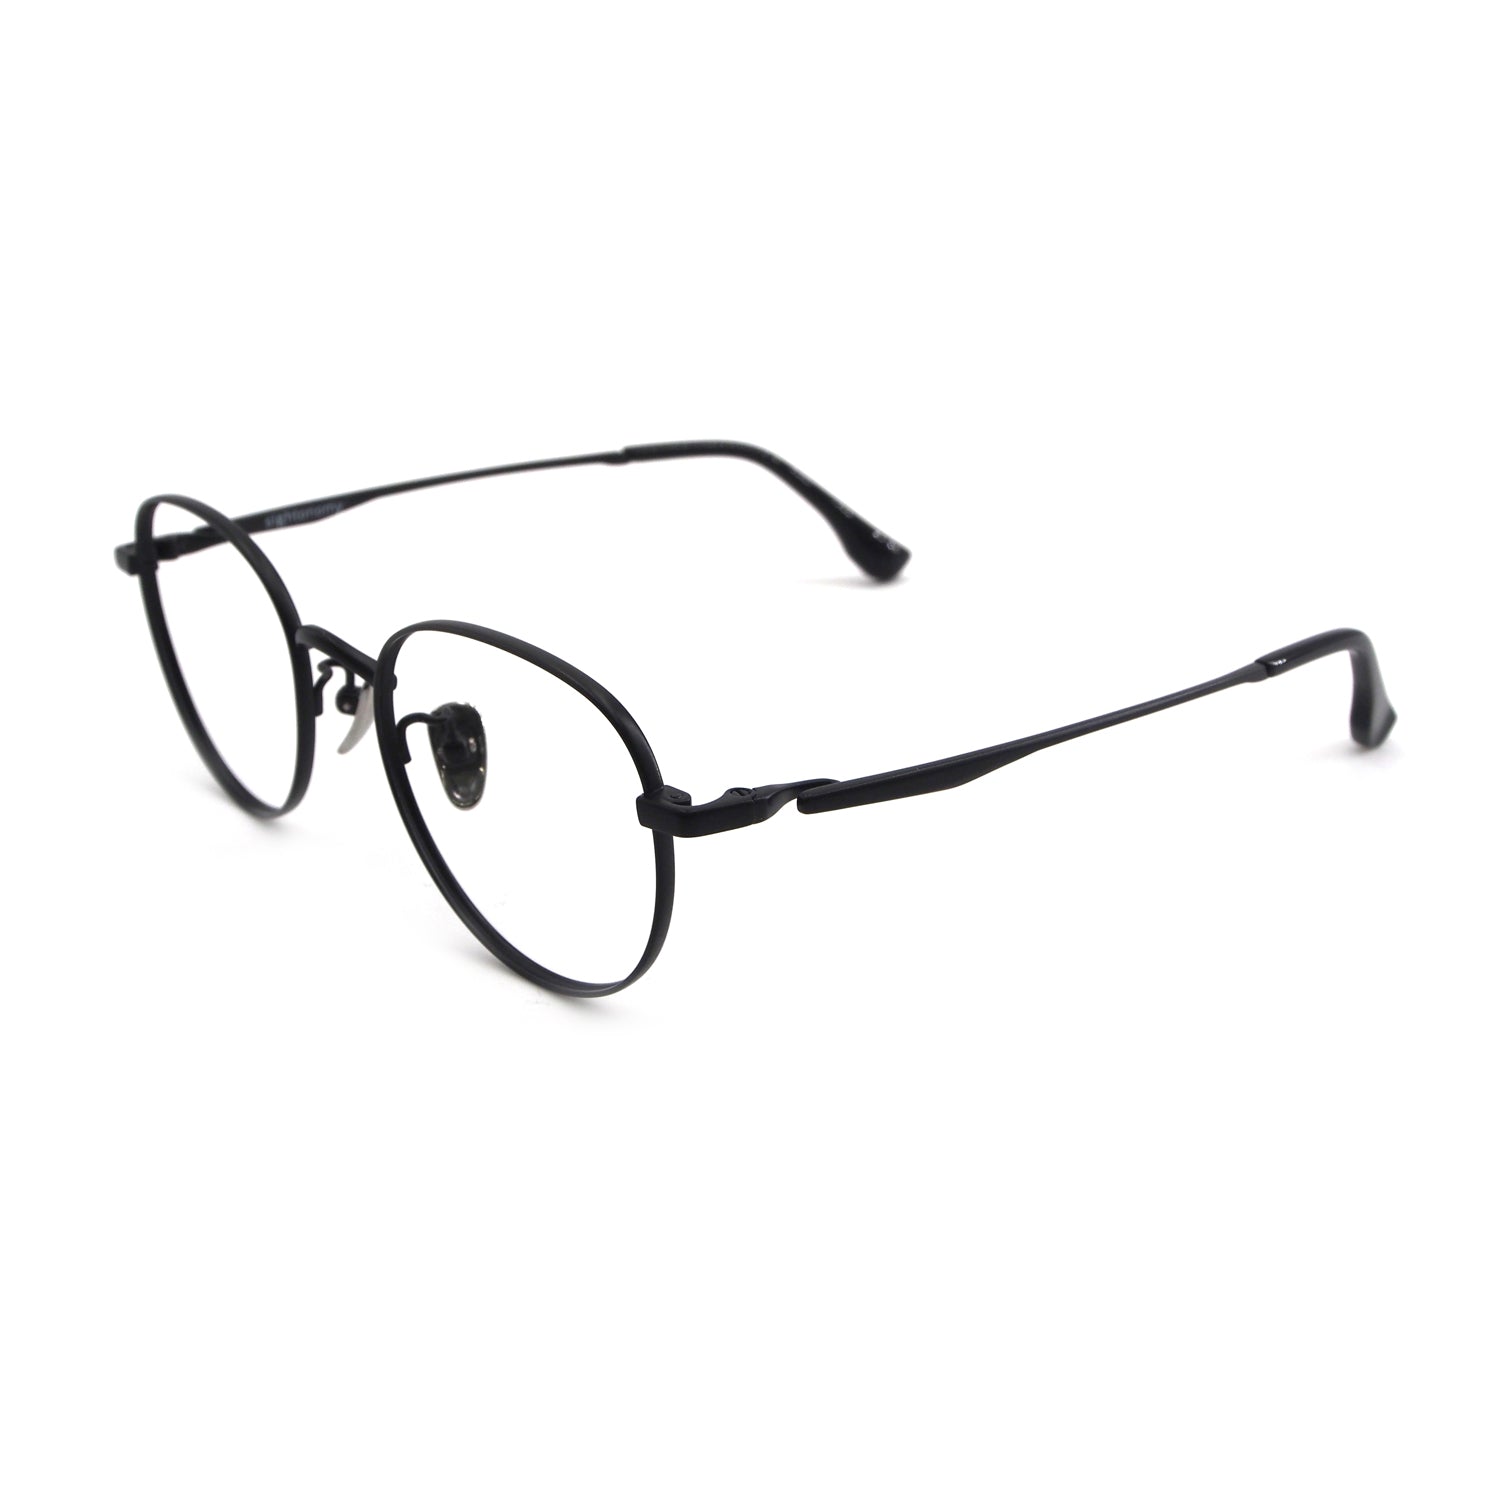 Nobu in Sable Black Eyeglasses - sightonomy